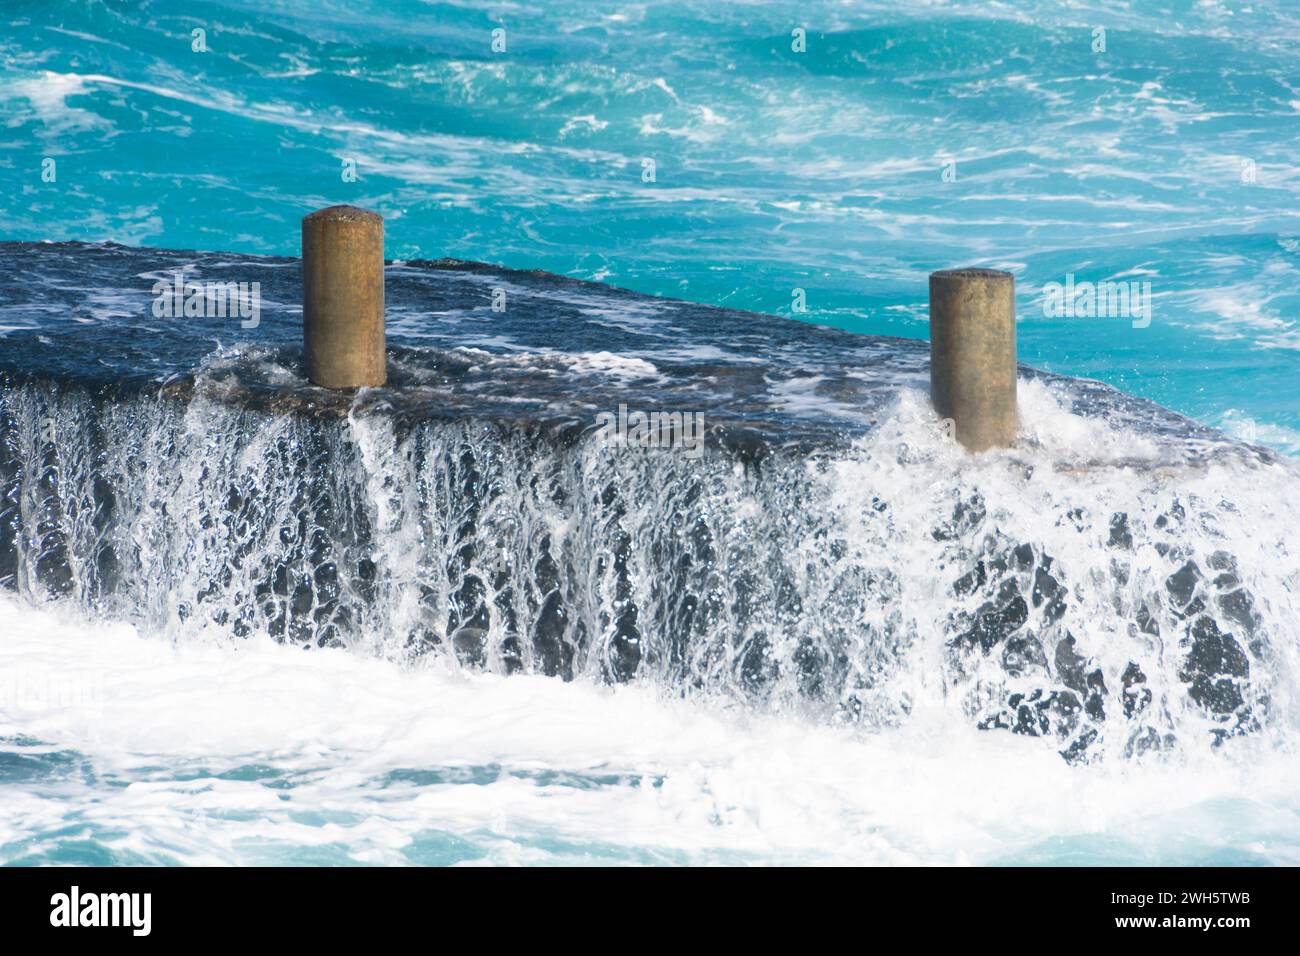 Le onde oceaniche si schiantano contro i getti, creando uno splendido spruzzo d'acqua marina. Foto Stock